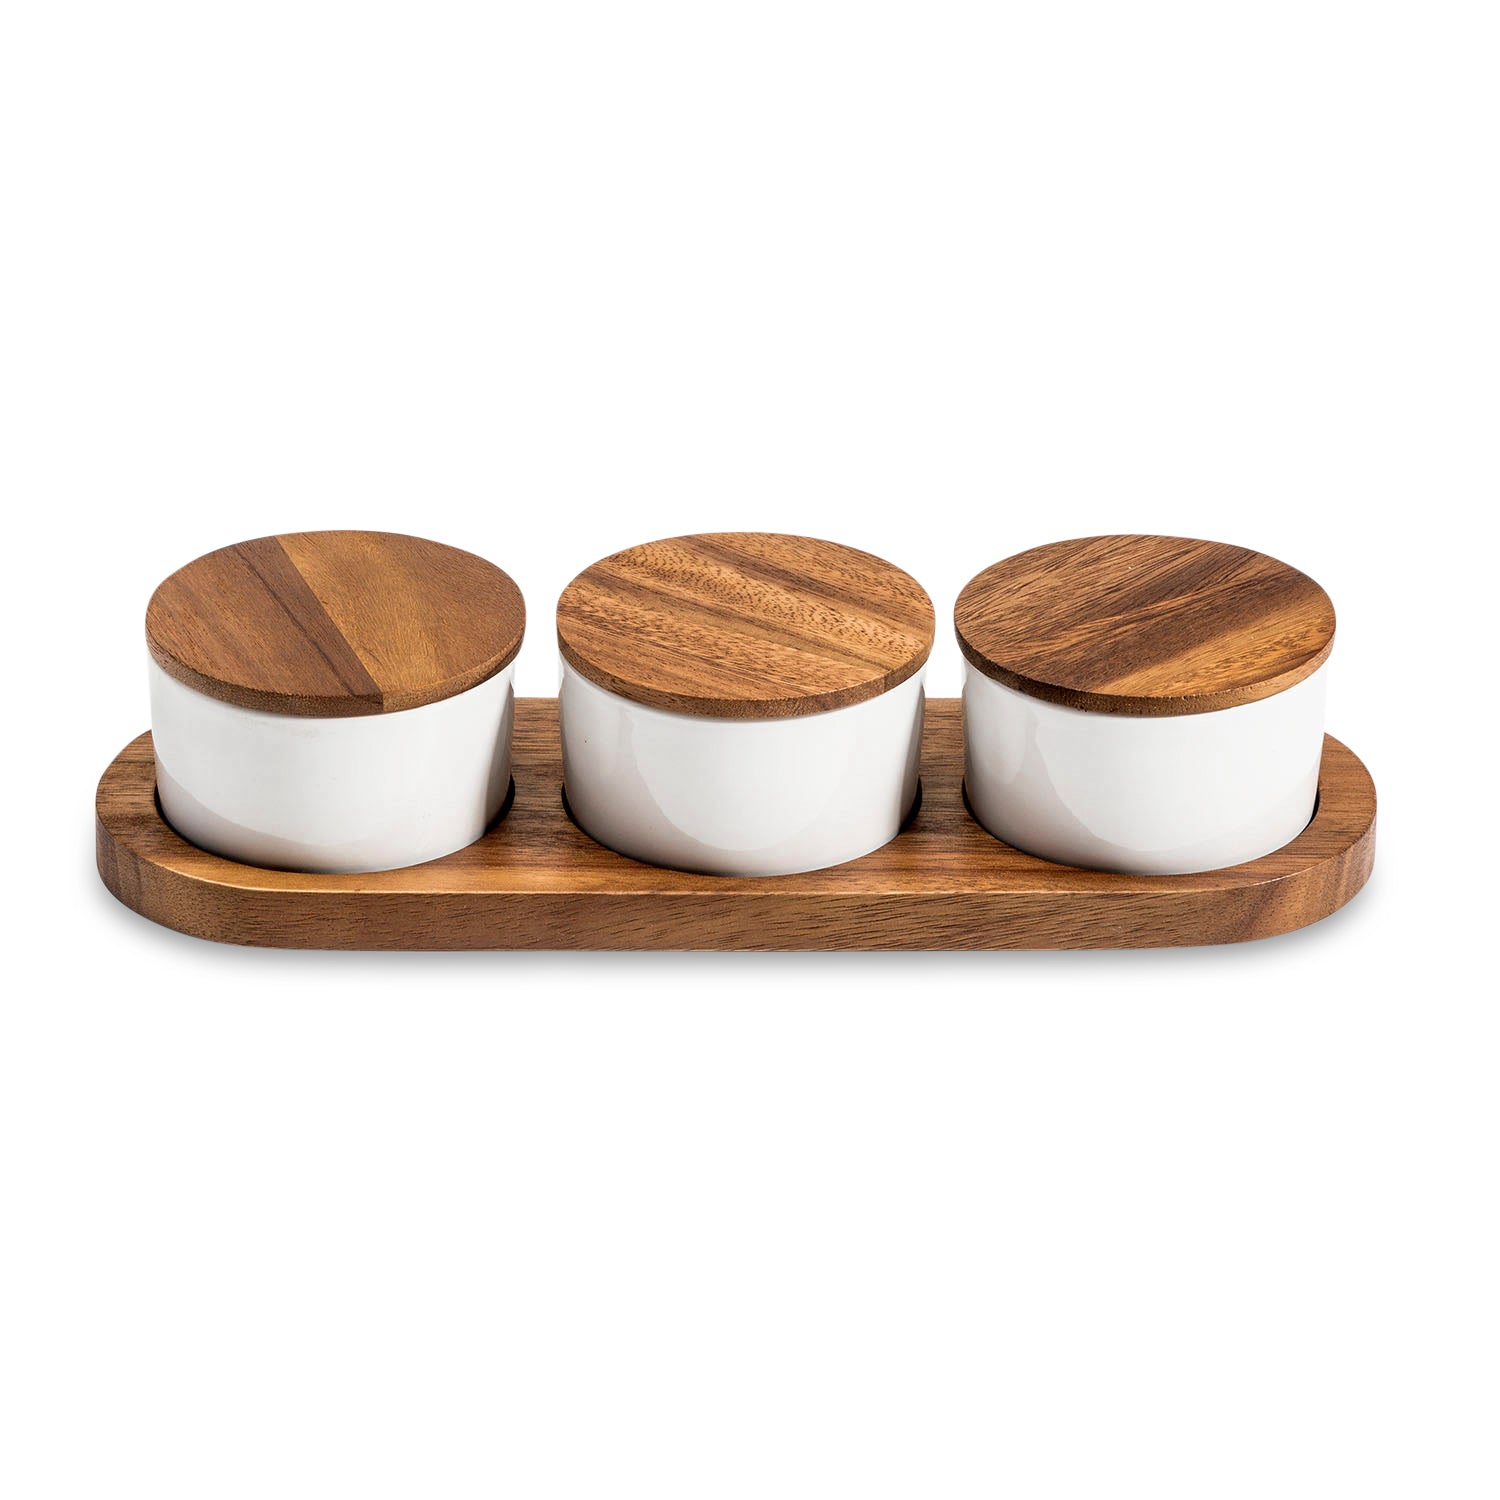 Condiment Serving Set  3 Ceramic Bowls with Lids  13" x 3.75"